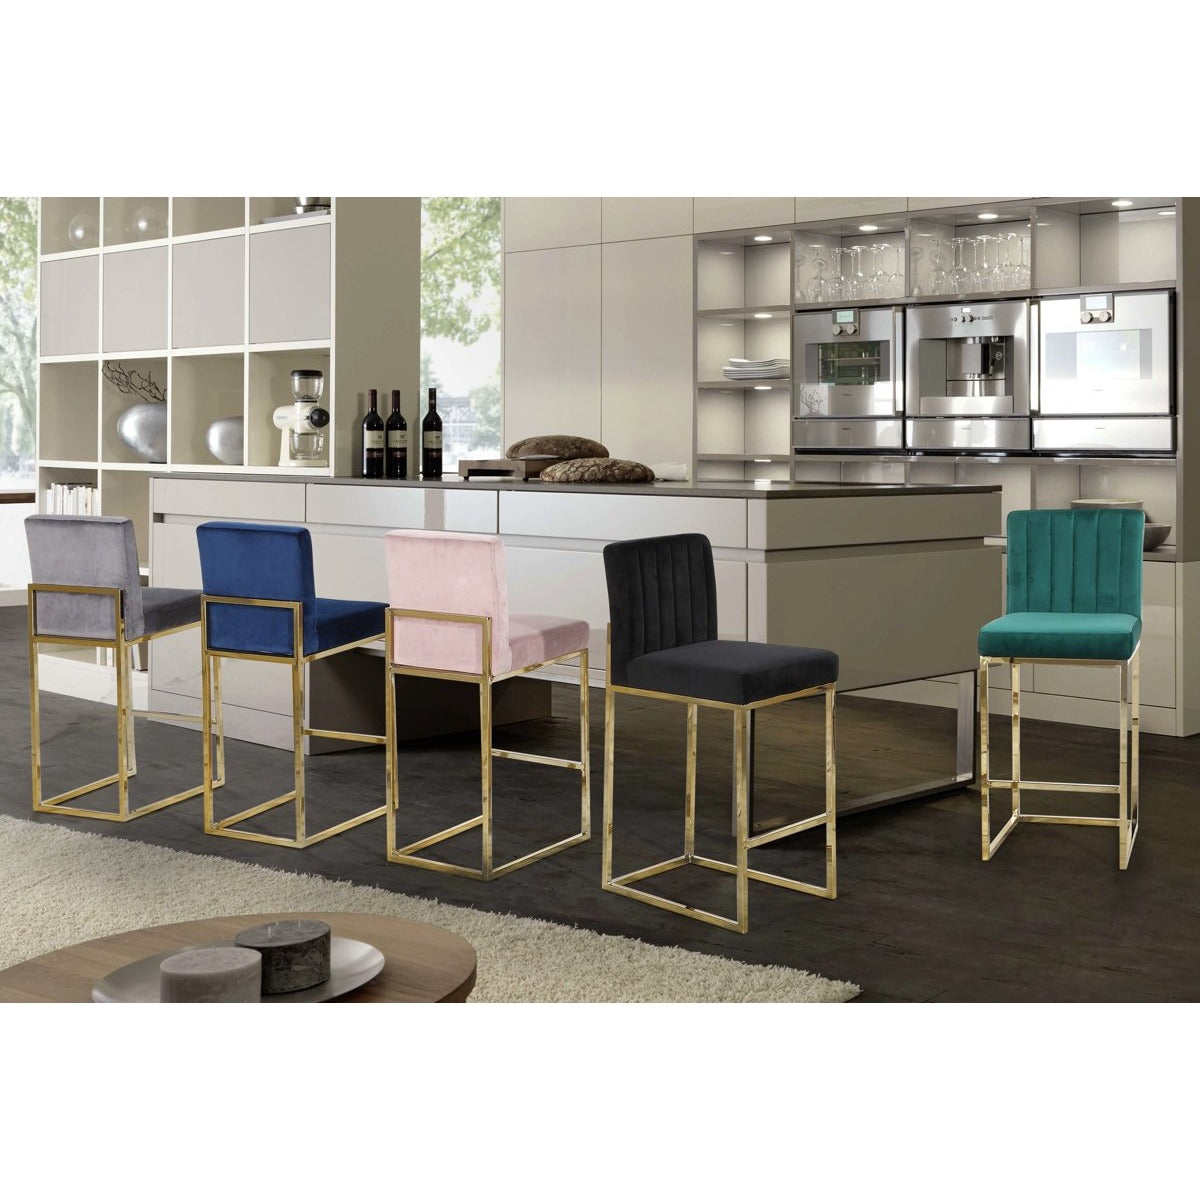 Meridian Furniture Giselle Green Velvet Stool-Minimal & Modern